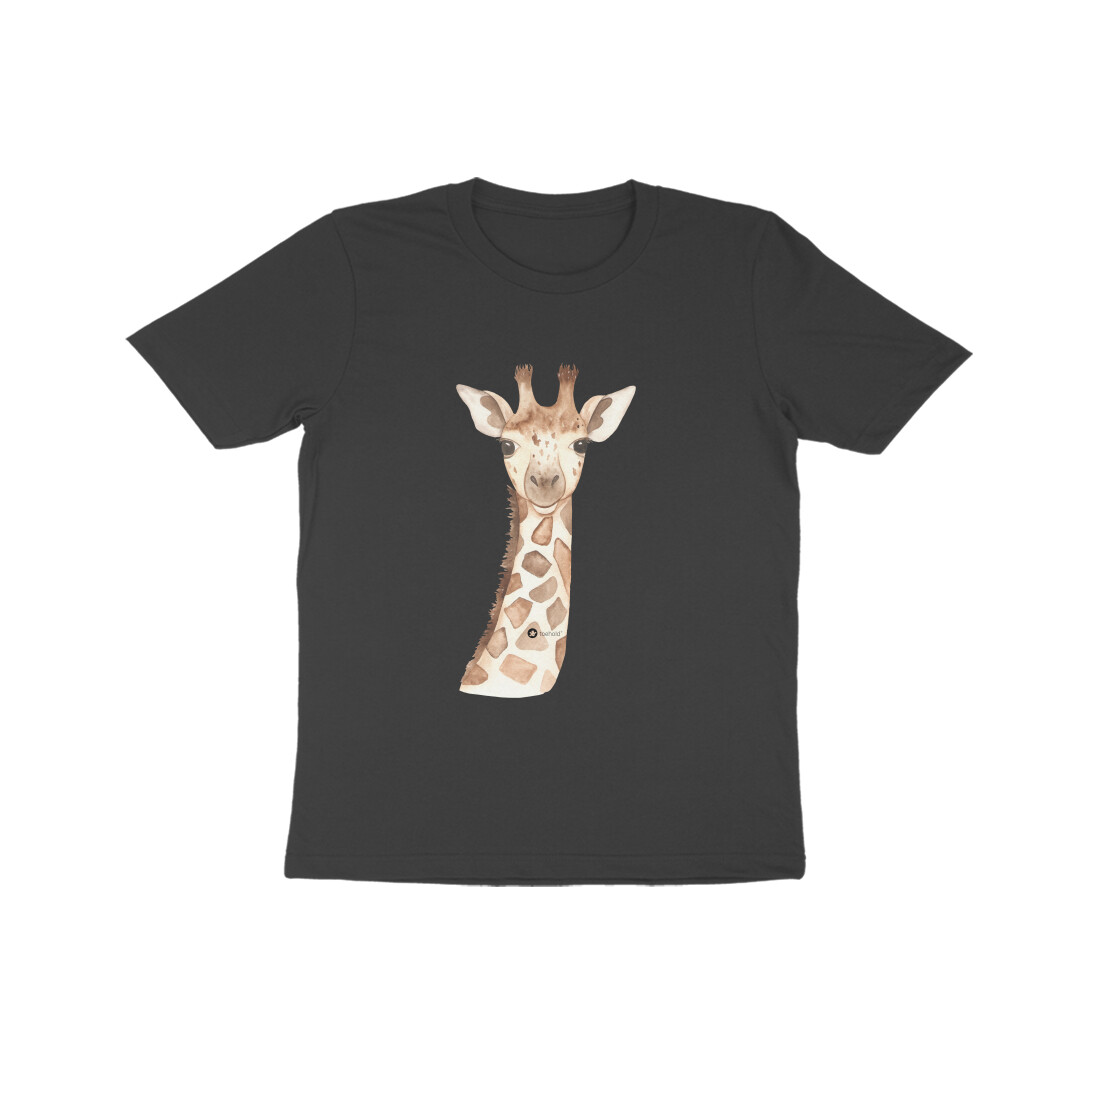 Giraffe Tee Shirt For Kids (7-14 Years) – Toehold ® Store